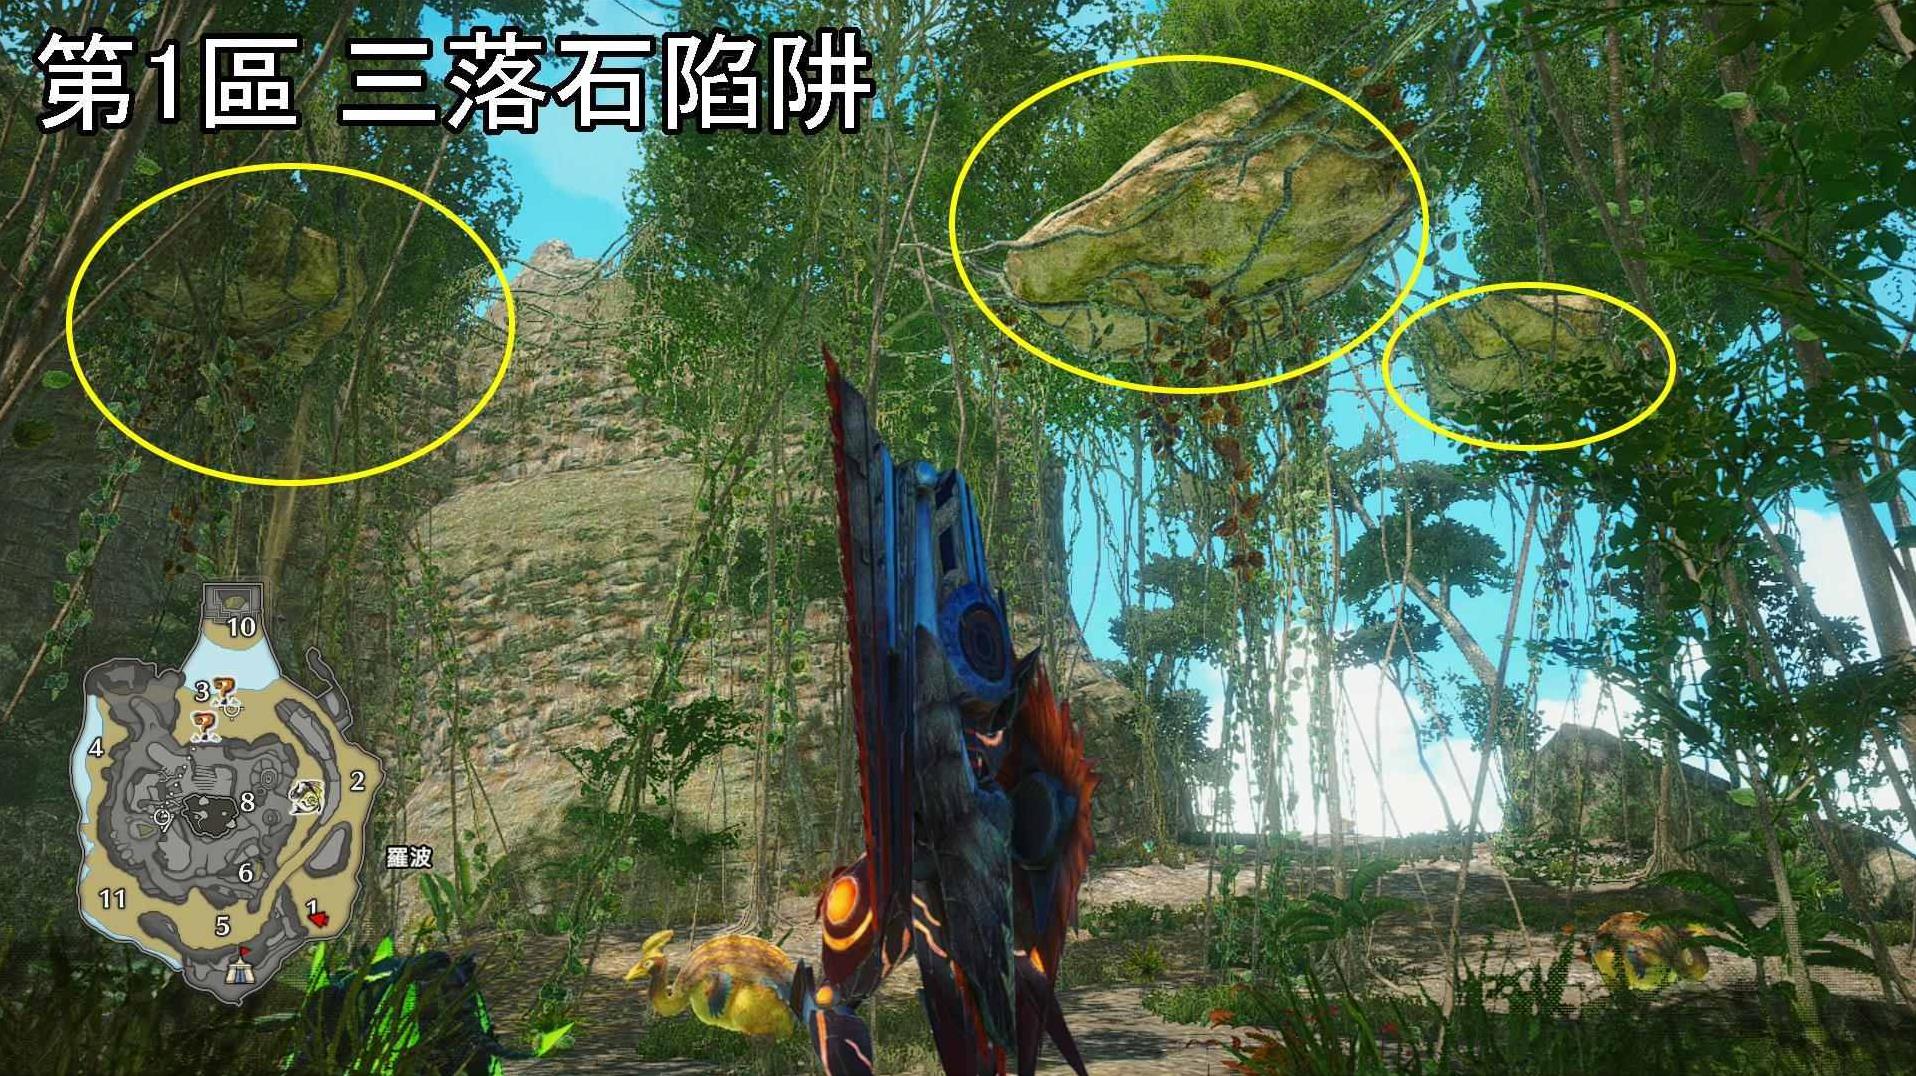 《魔物獵人崛起》曙光DLC密林環境生物與陷阱位置介紹 - 第11張